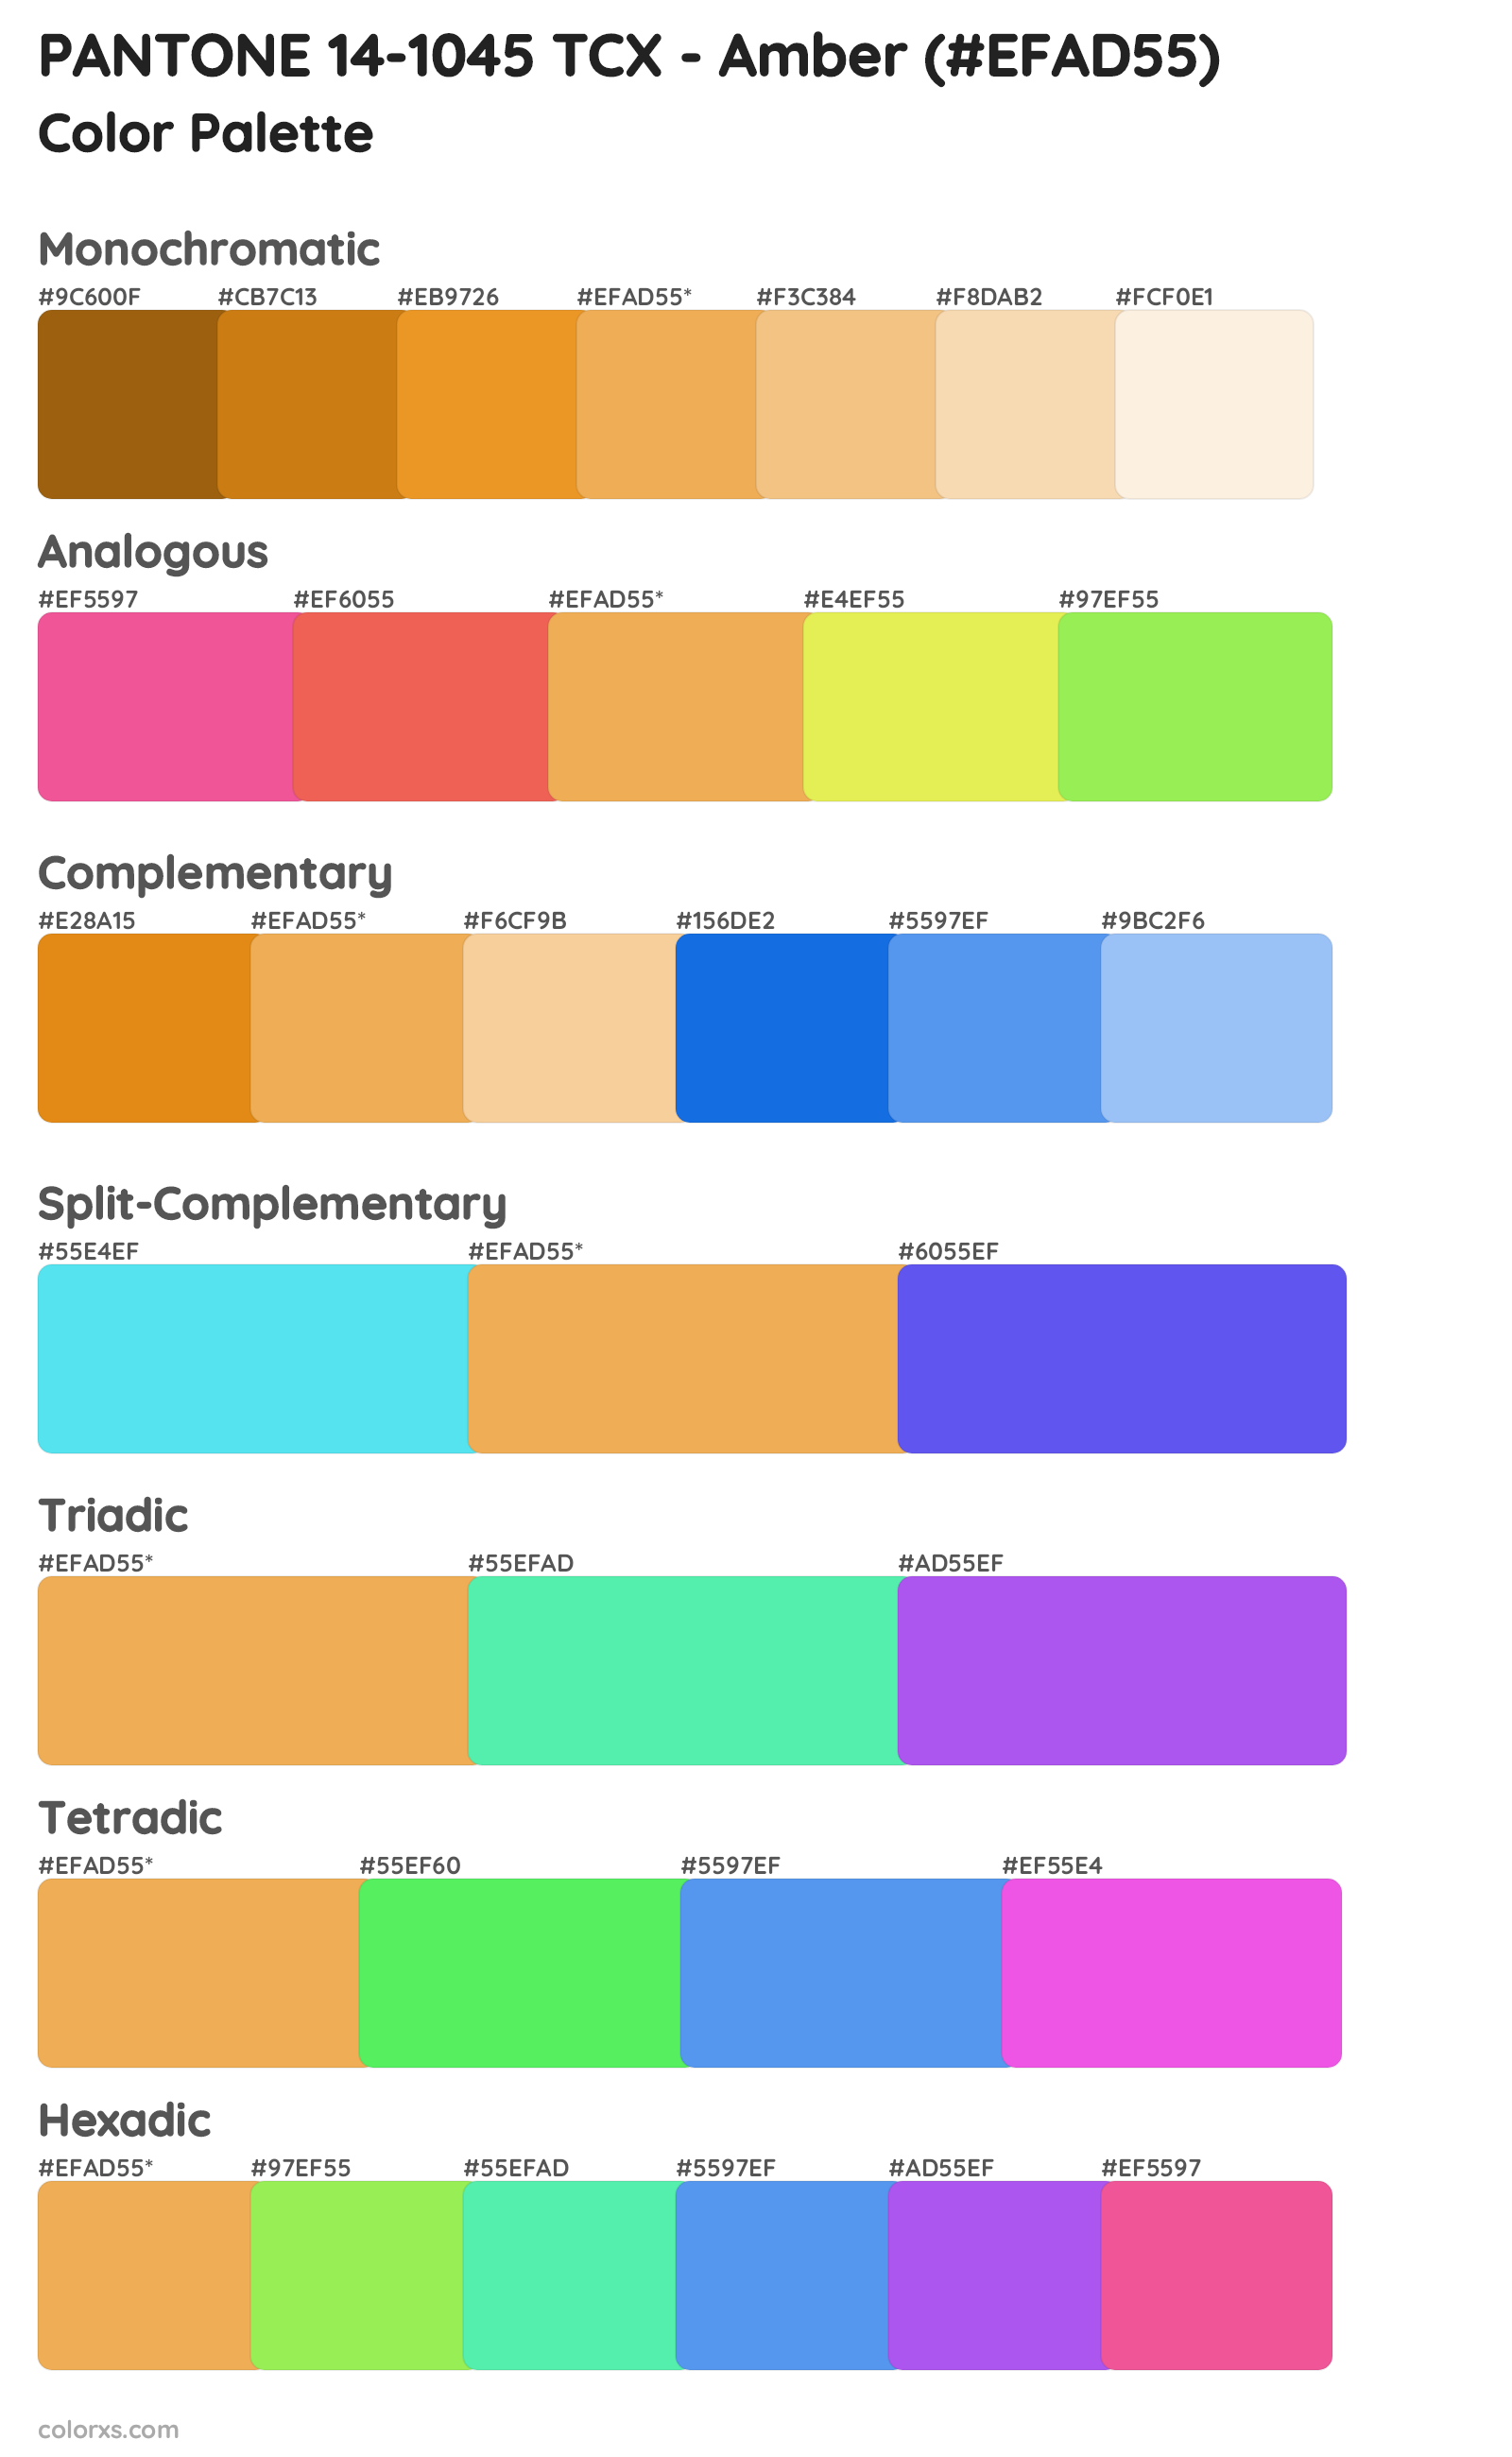 PANTONE 14-1045 TCX - Amber Color Scheme Palettes